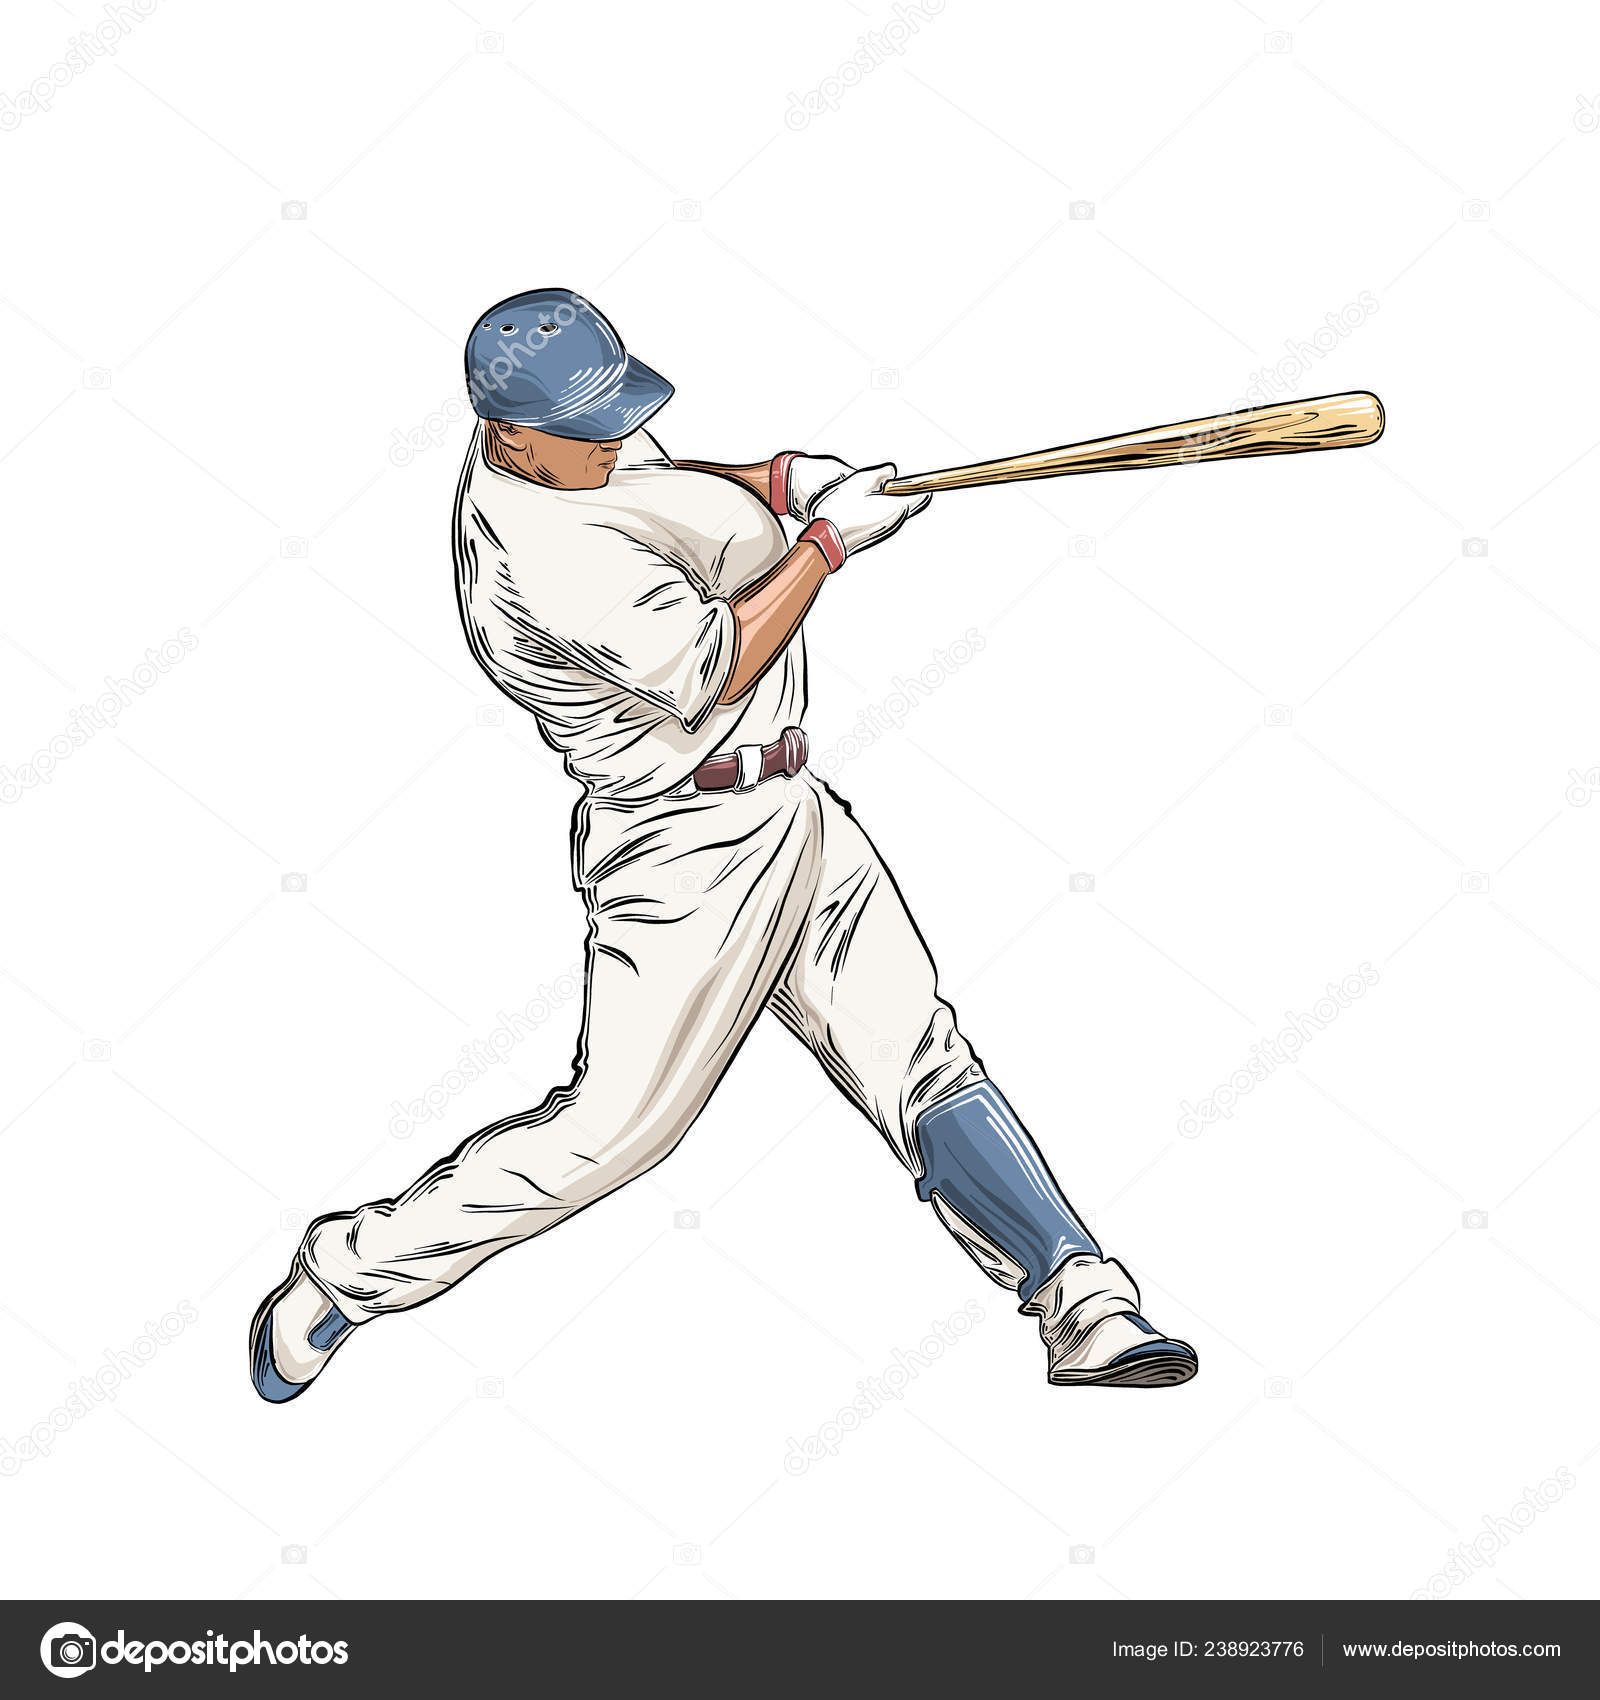 Icono De Bate De Béisbol En Dibujo De Color Ilustración del Vector